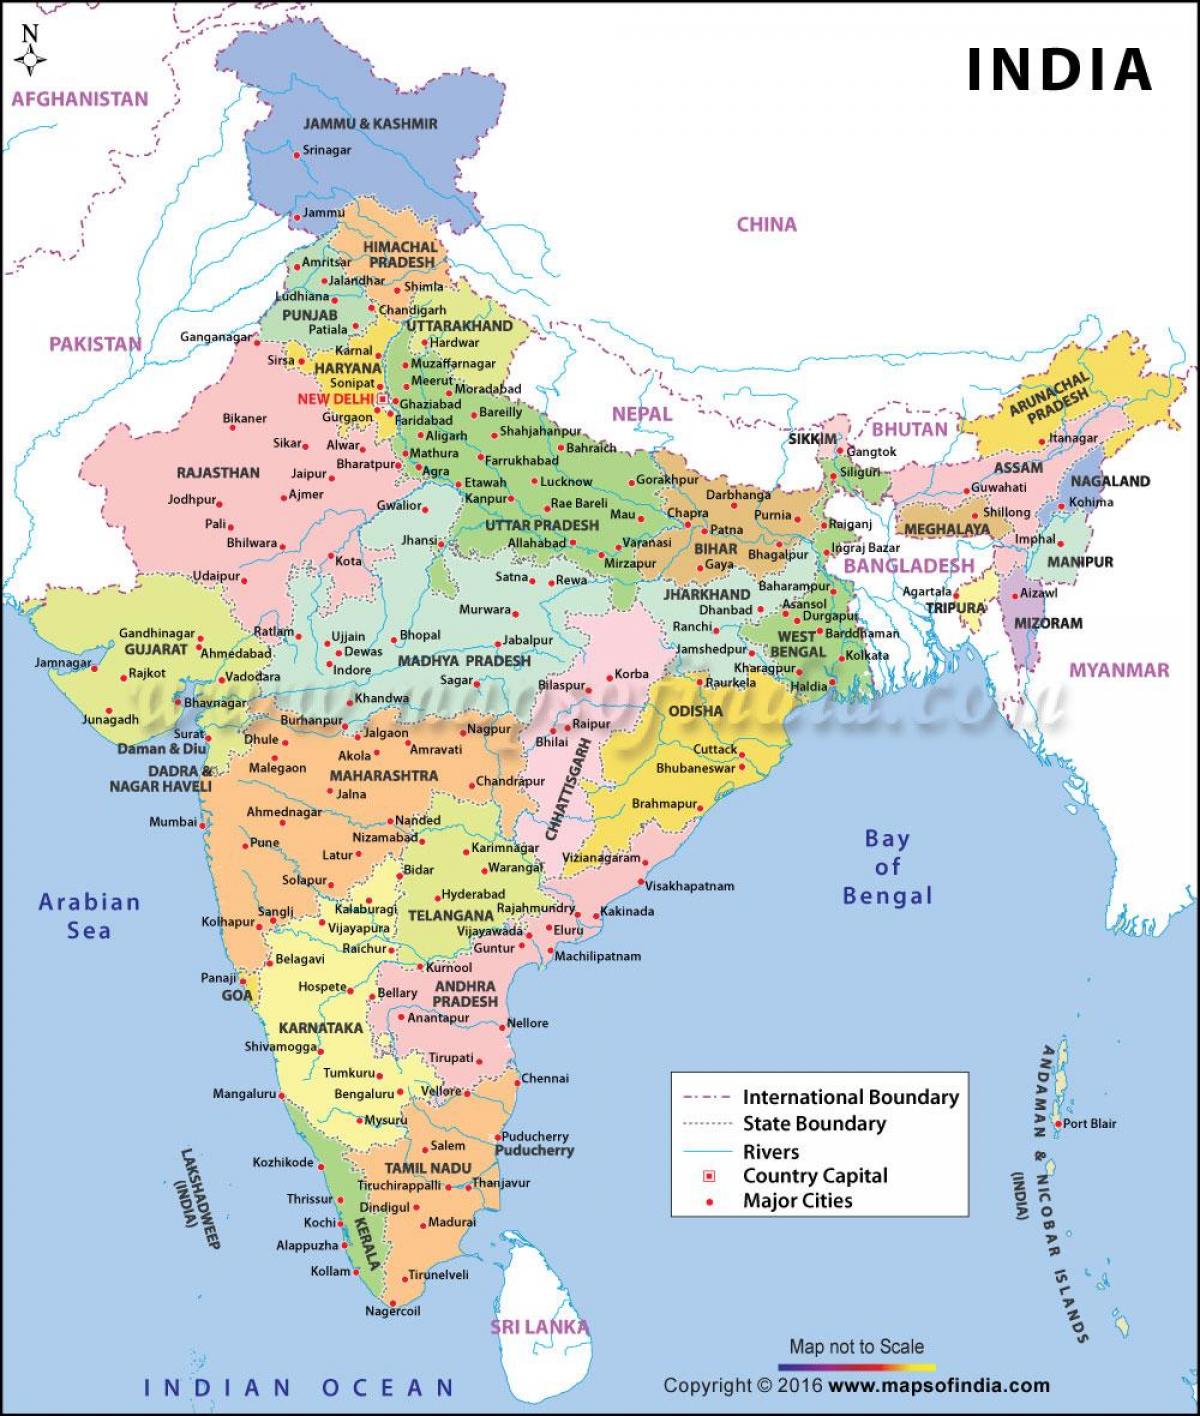 крупные порты на карте Индии